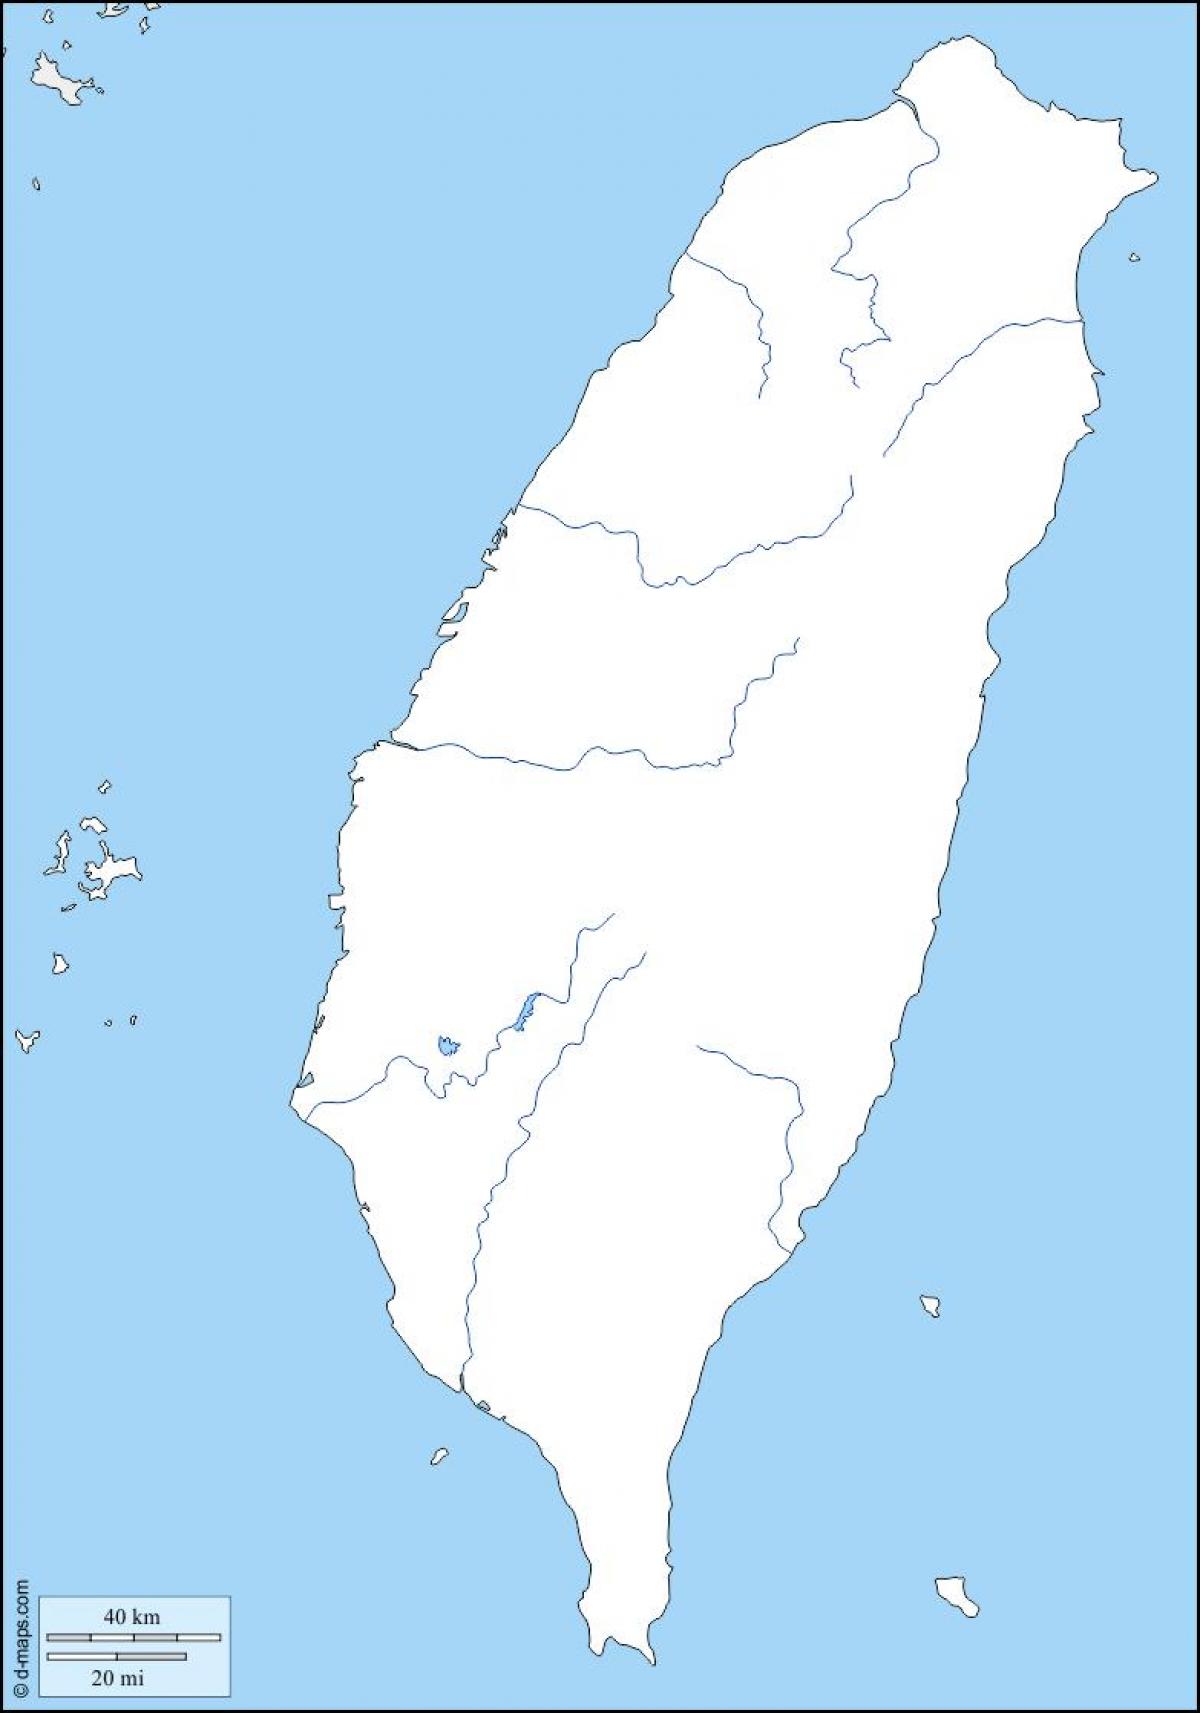 Taiwan kartta ääriviivat - Kartta Taiwan ääriviivat (Itä-Aasia - Aasia)